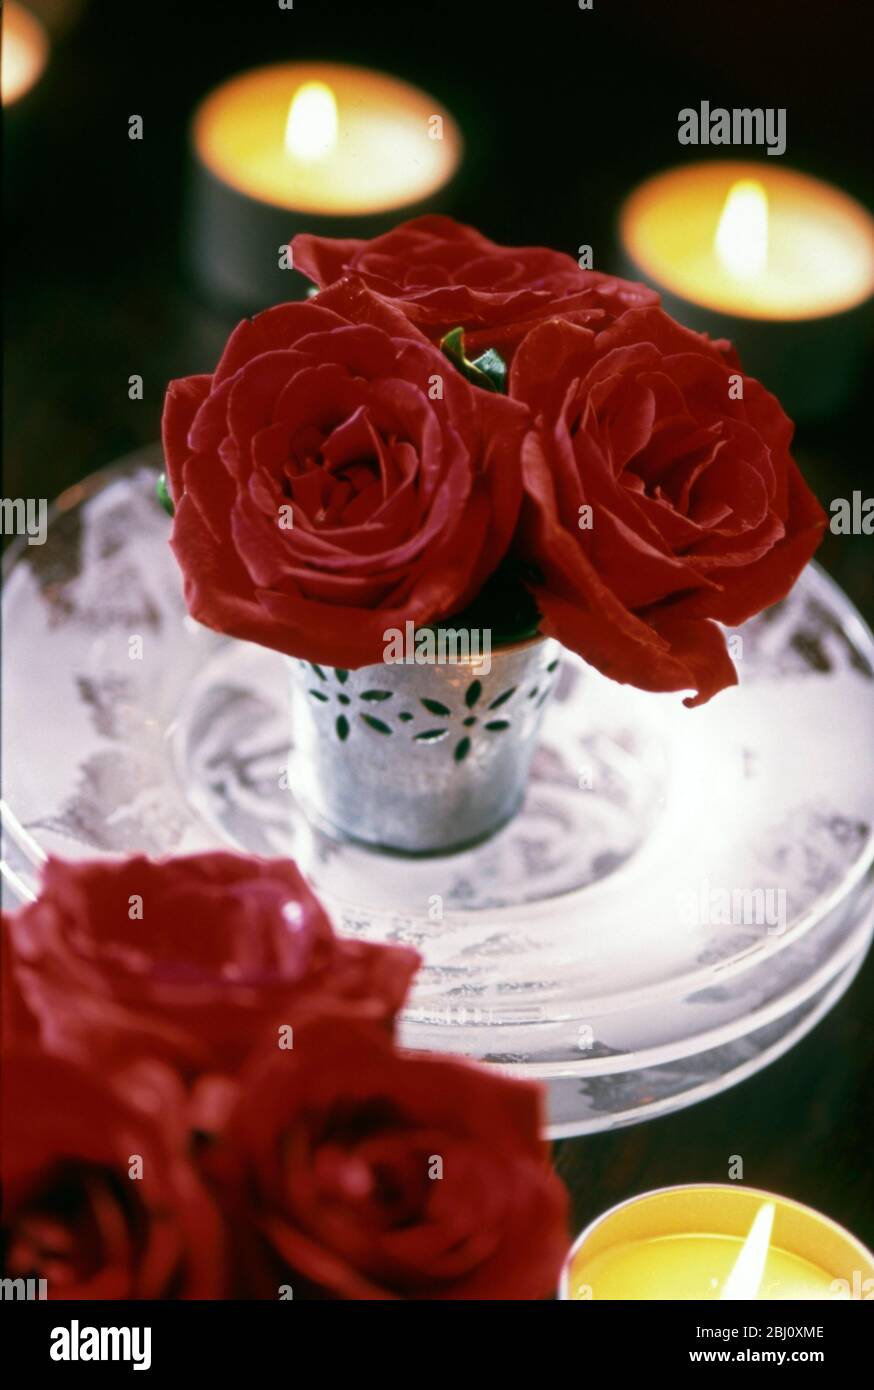 Trois roses rouges dans une petite casserole en métal décoratif sur une pile de trois plaques de verre rosé avec bougies chauffe-plat autour. Décoration de table de Noël - Banque D'Images